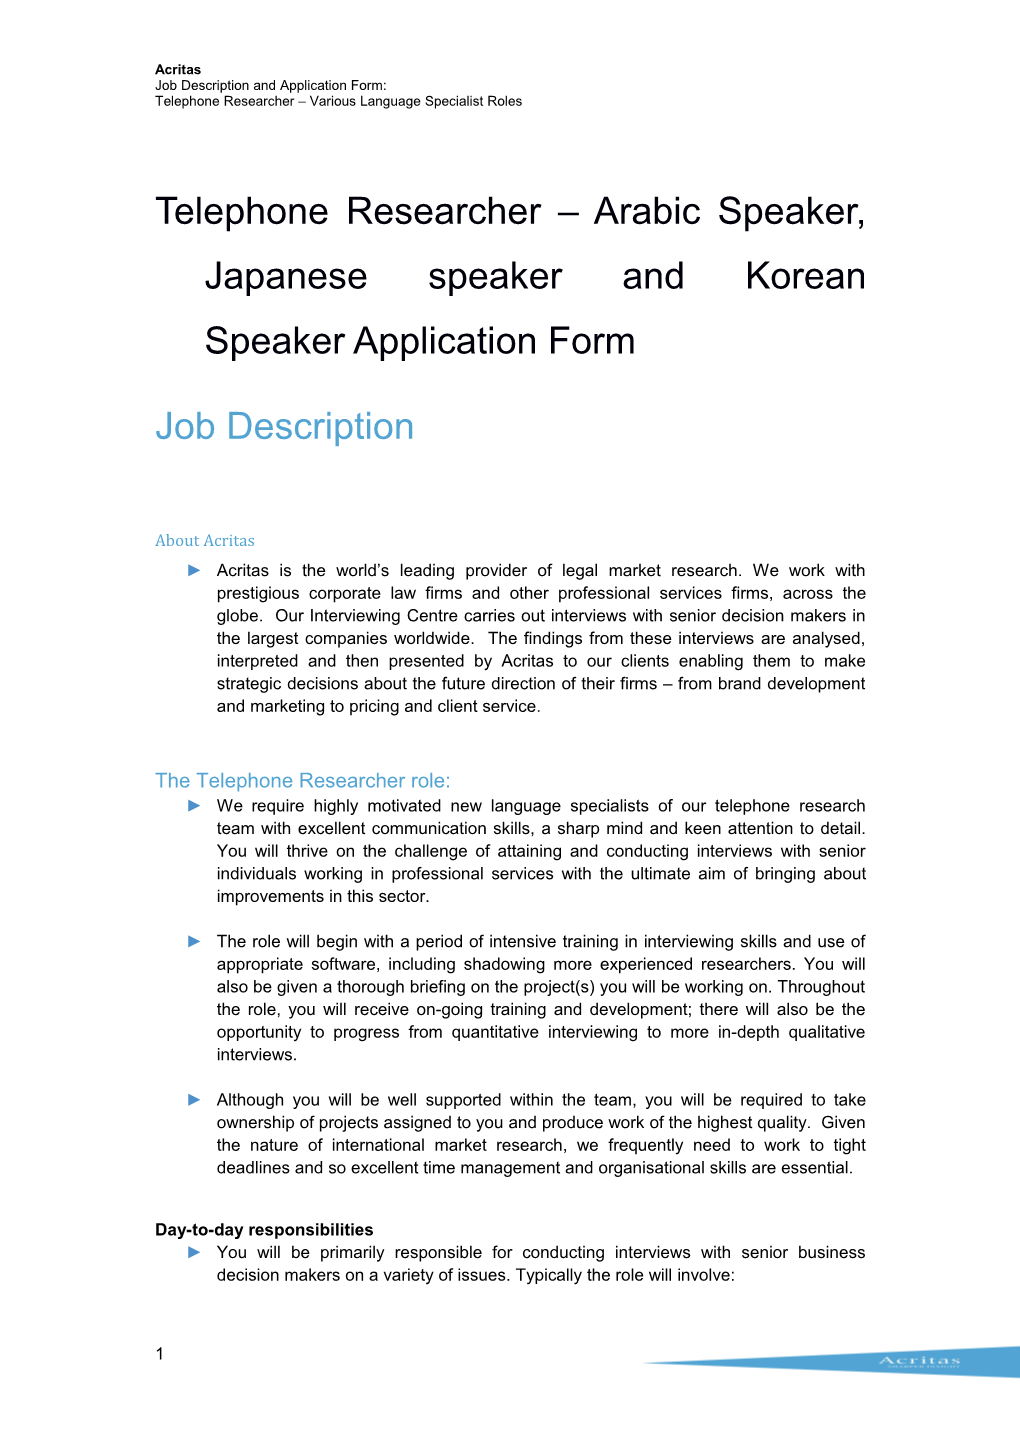 Telephone Researcher Arabic Speaker, Japanese Speaker and Korean Speaker Application Form